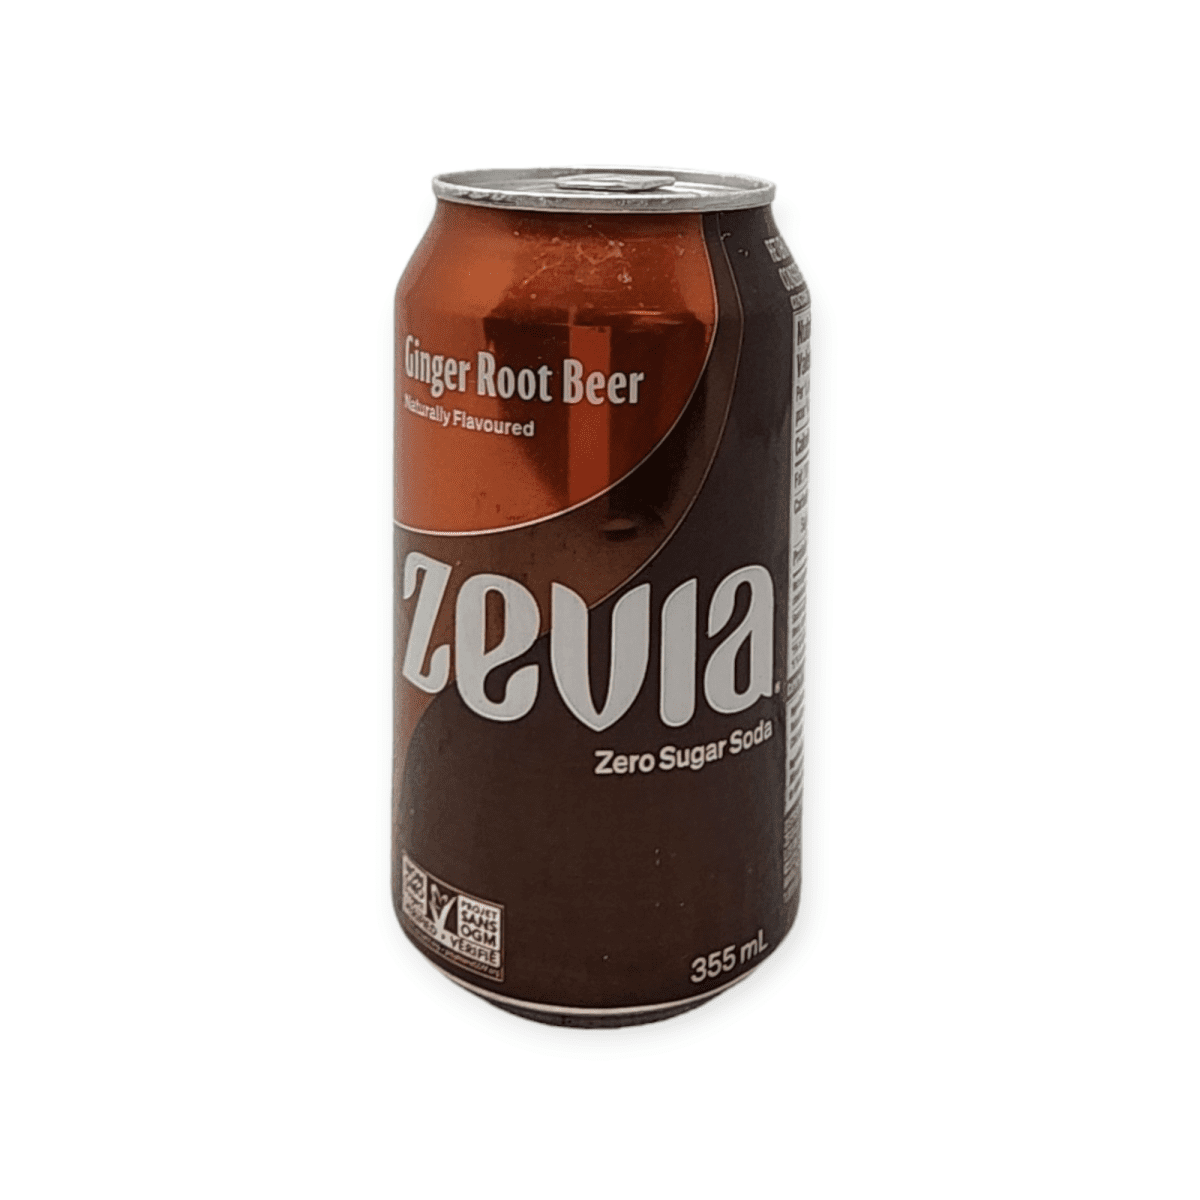 Zevia Ginger Root Beer (355mL)